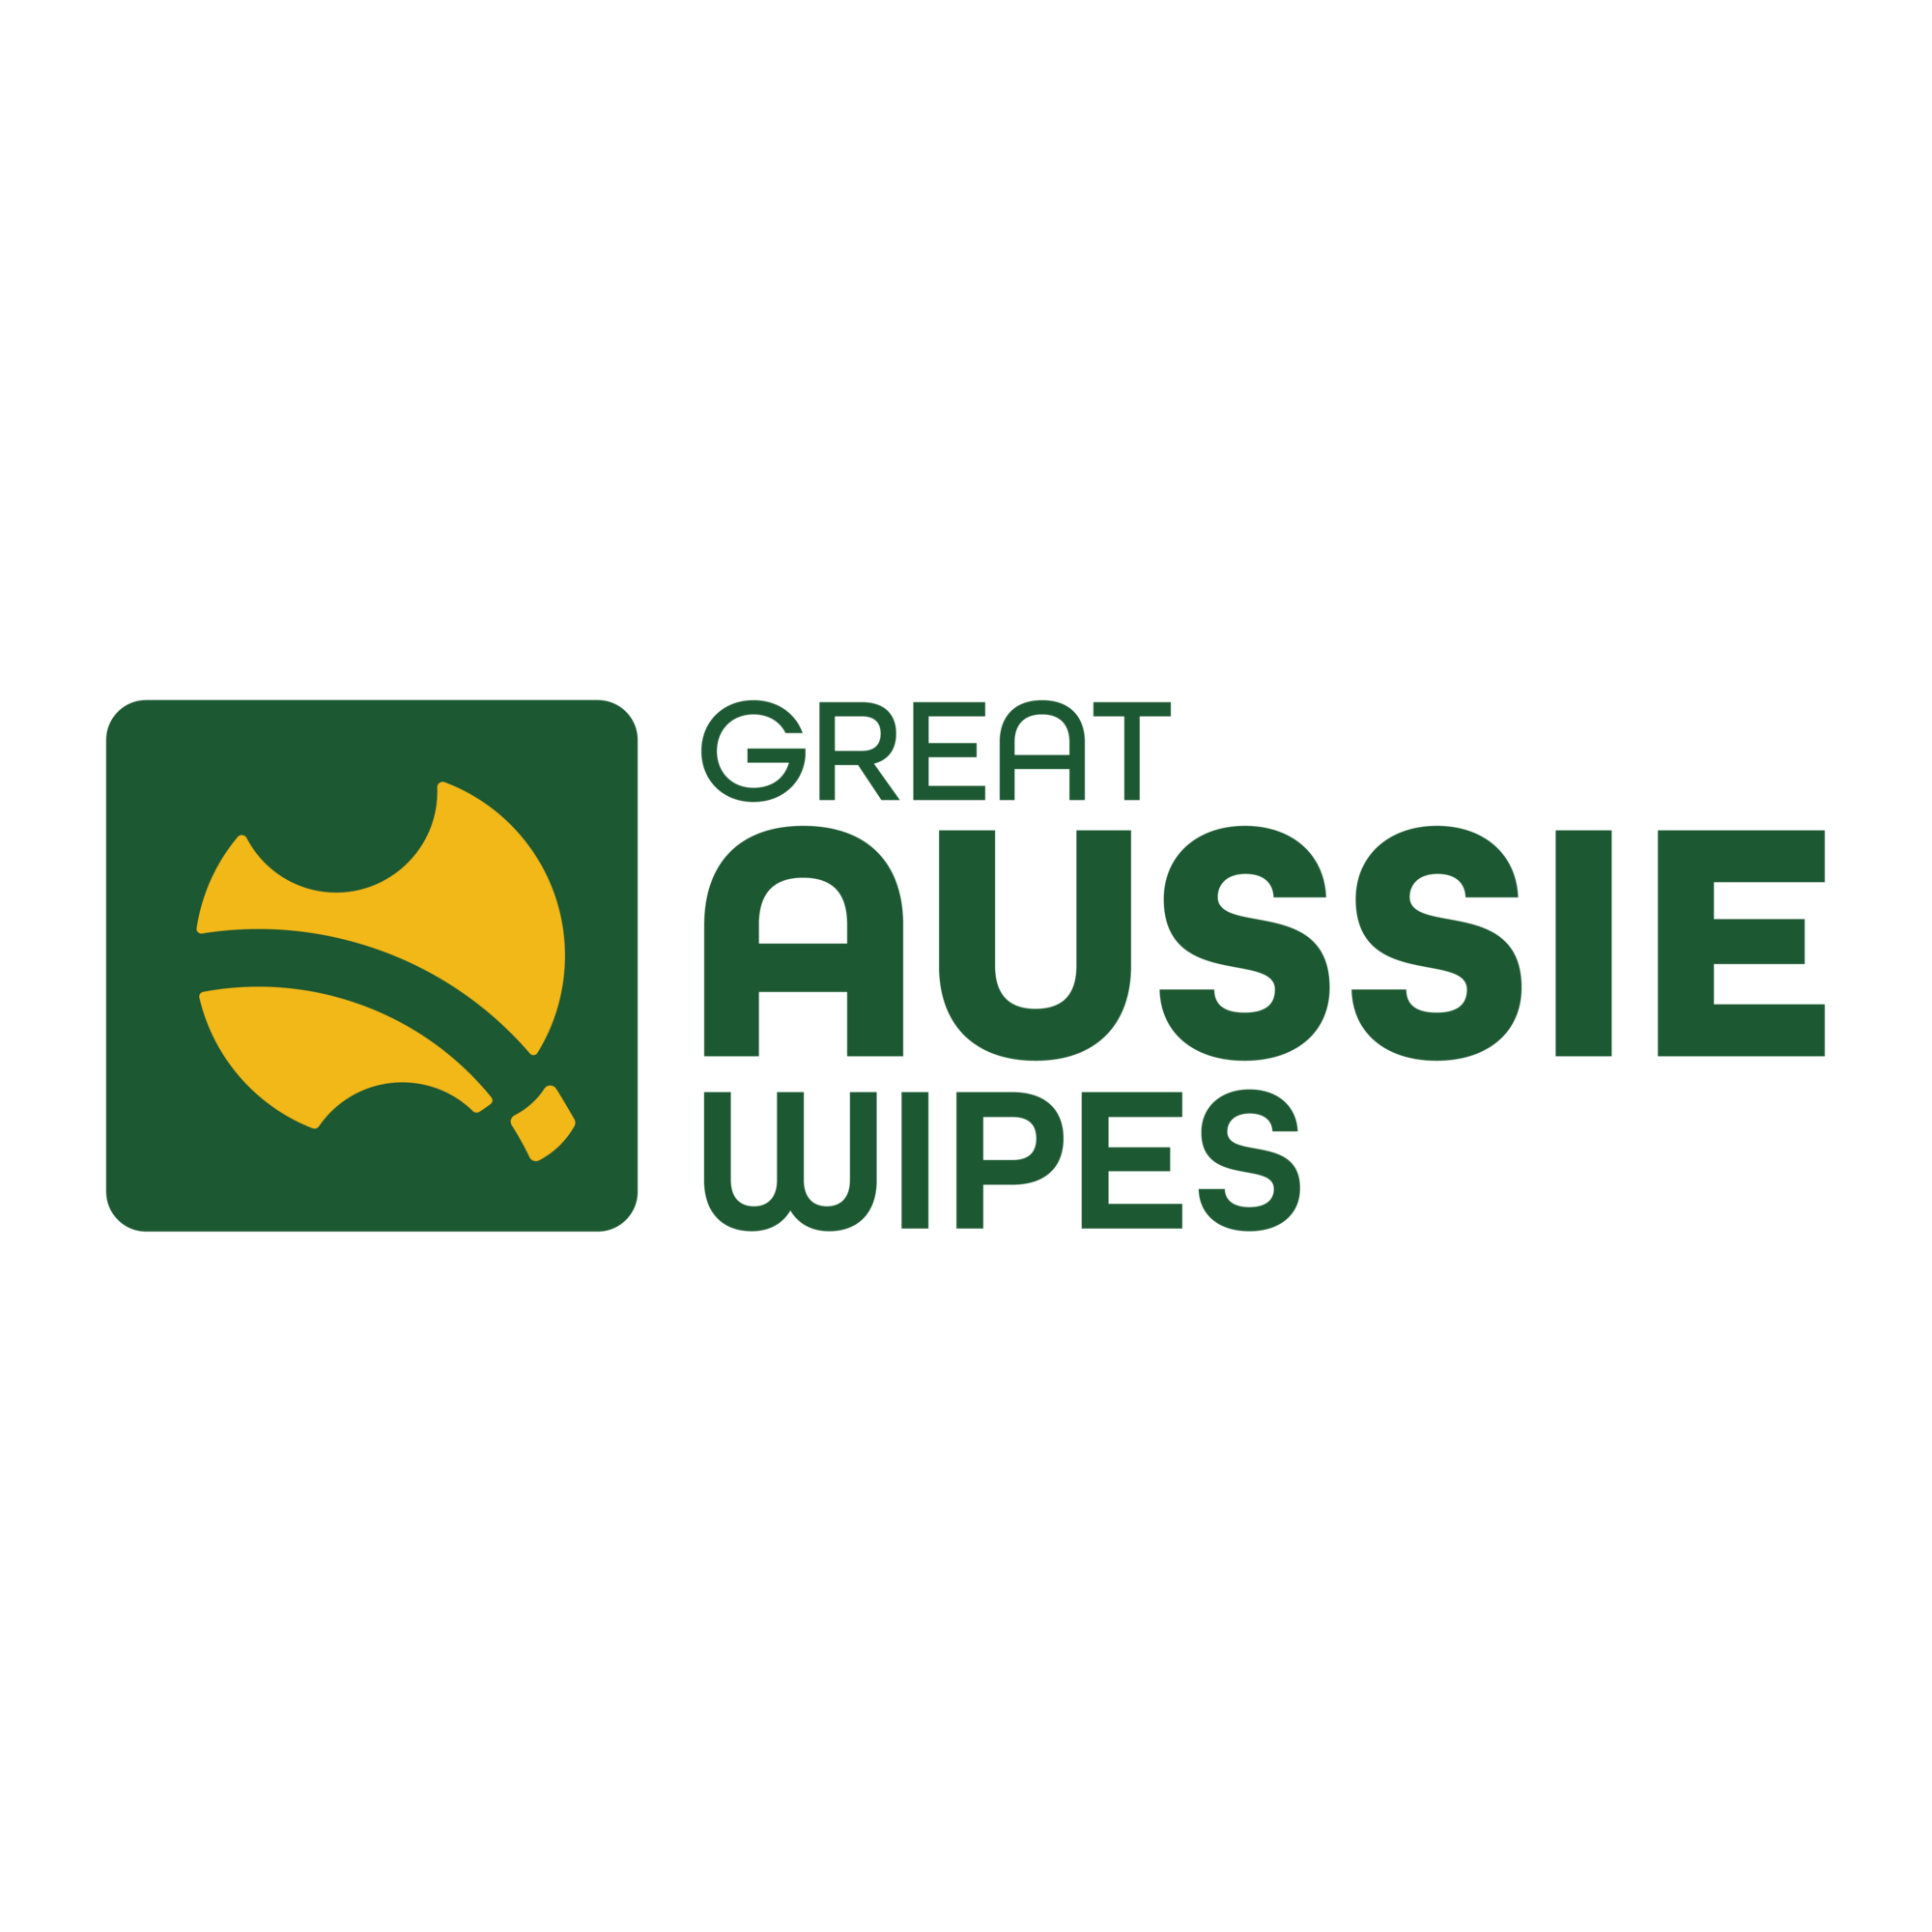 Great Aussie Wipes